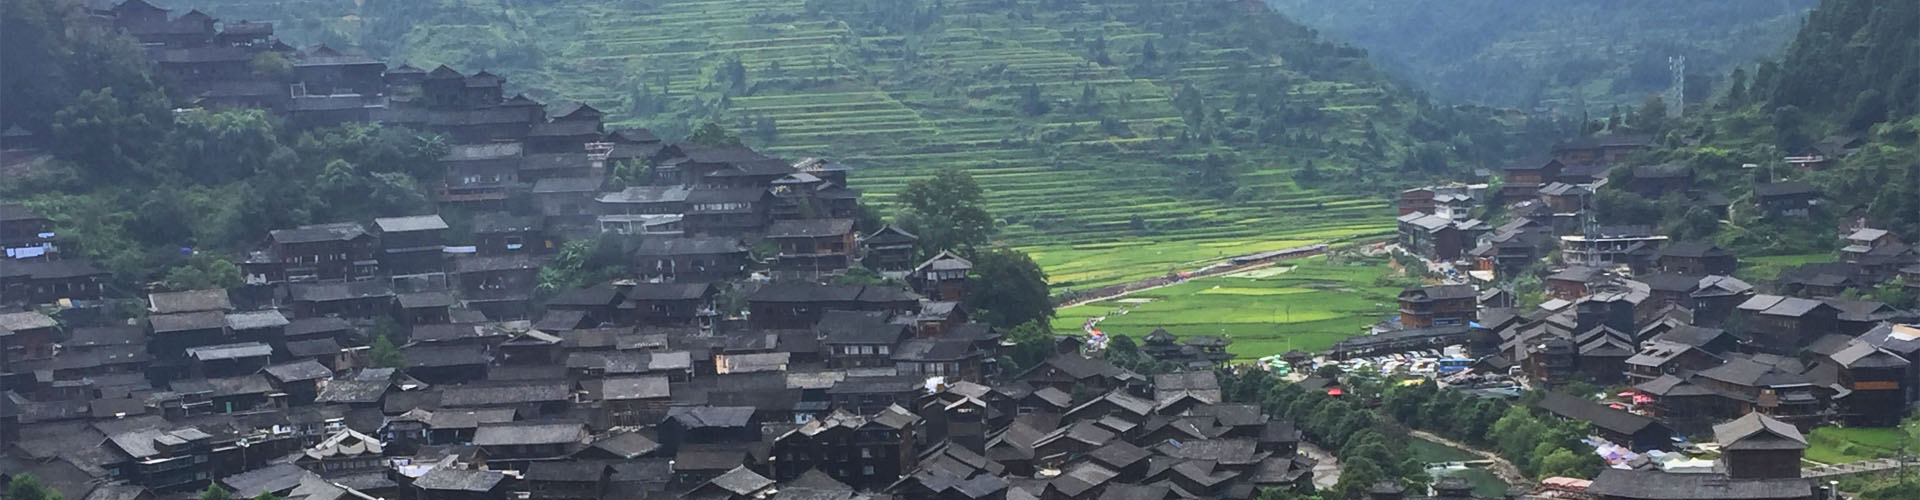 Village Dong de Zhaoxing